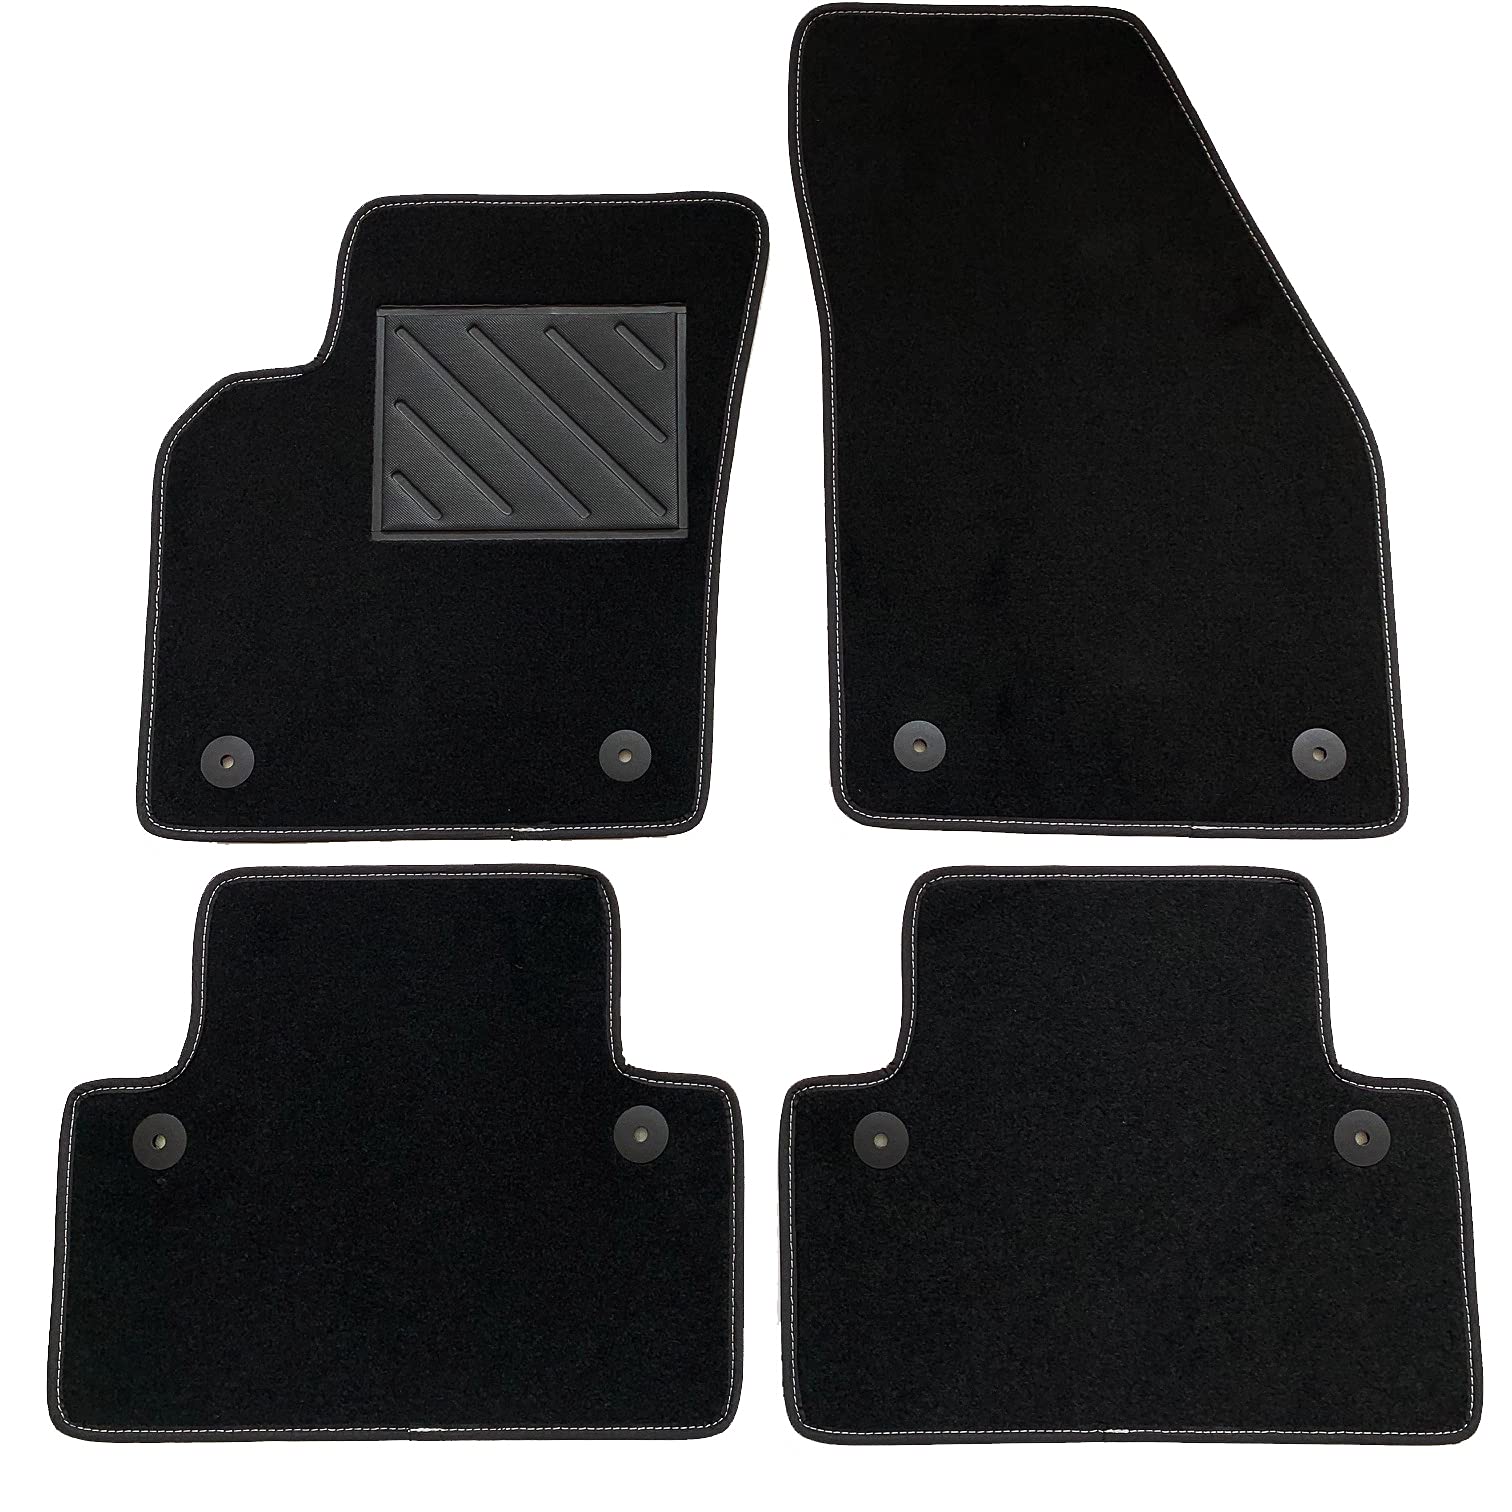 Fußmatten kompatibel mit Volvo C30, S40 II, V50, verstärkter Gummi-Fersenschutz und Befestigungsknöpfe von MTC Automotive